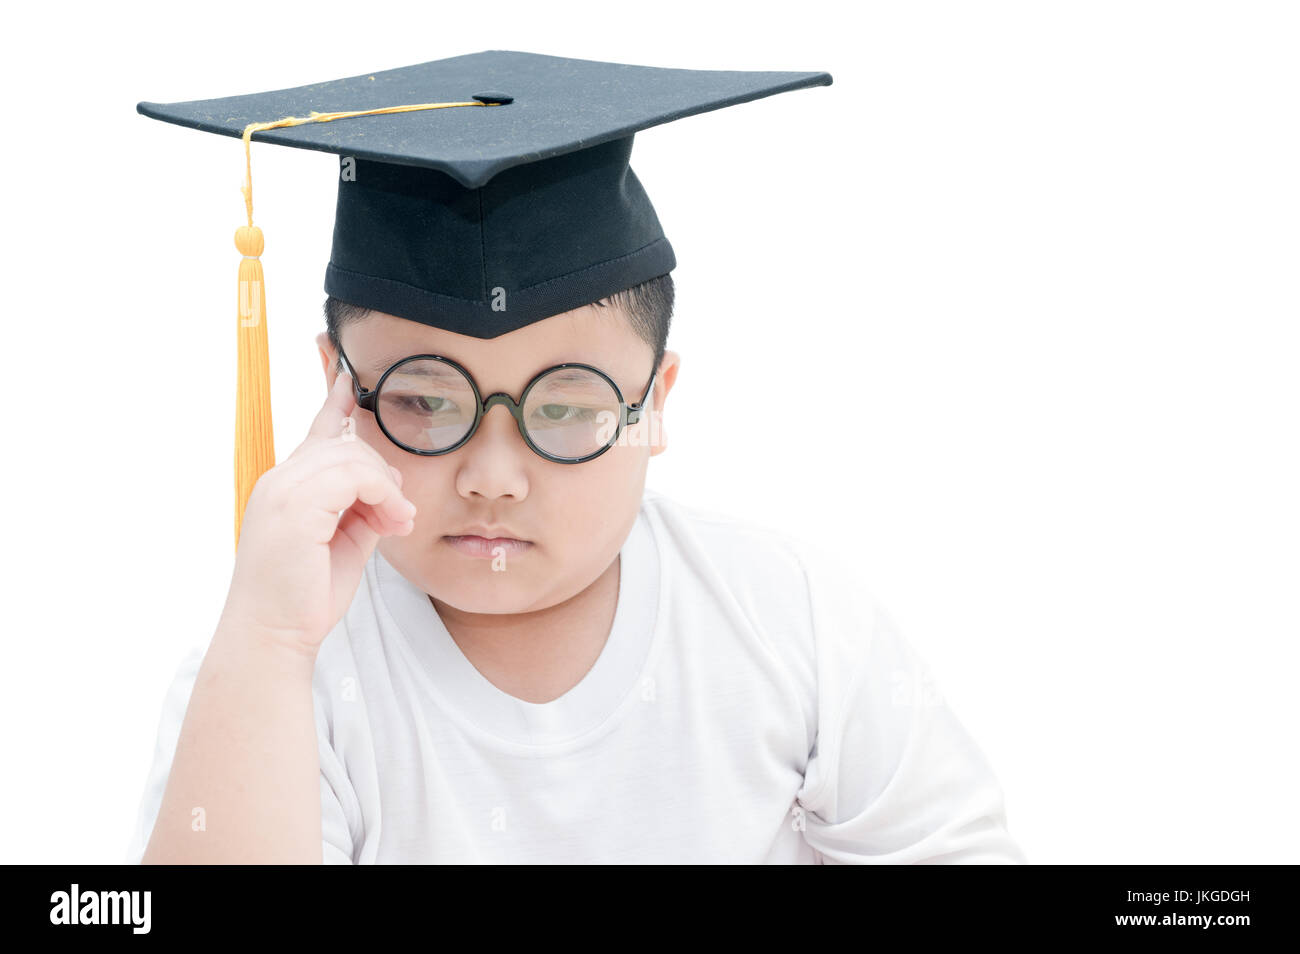 Asiatische Schule Kind graduate denken mit Graduation Cap isoliert auf weißem Hintergrund Stockfoto